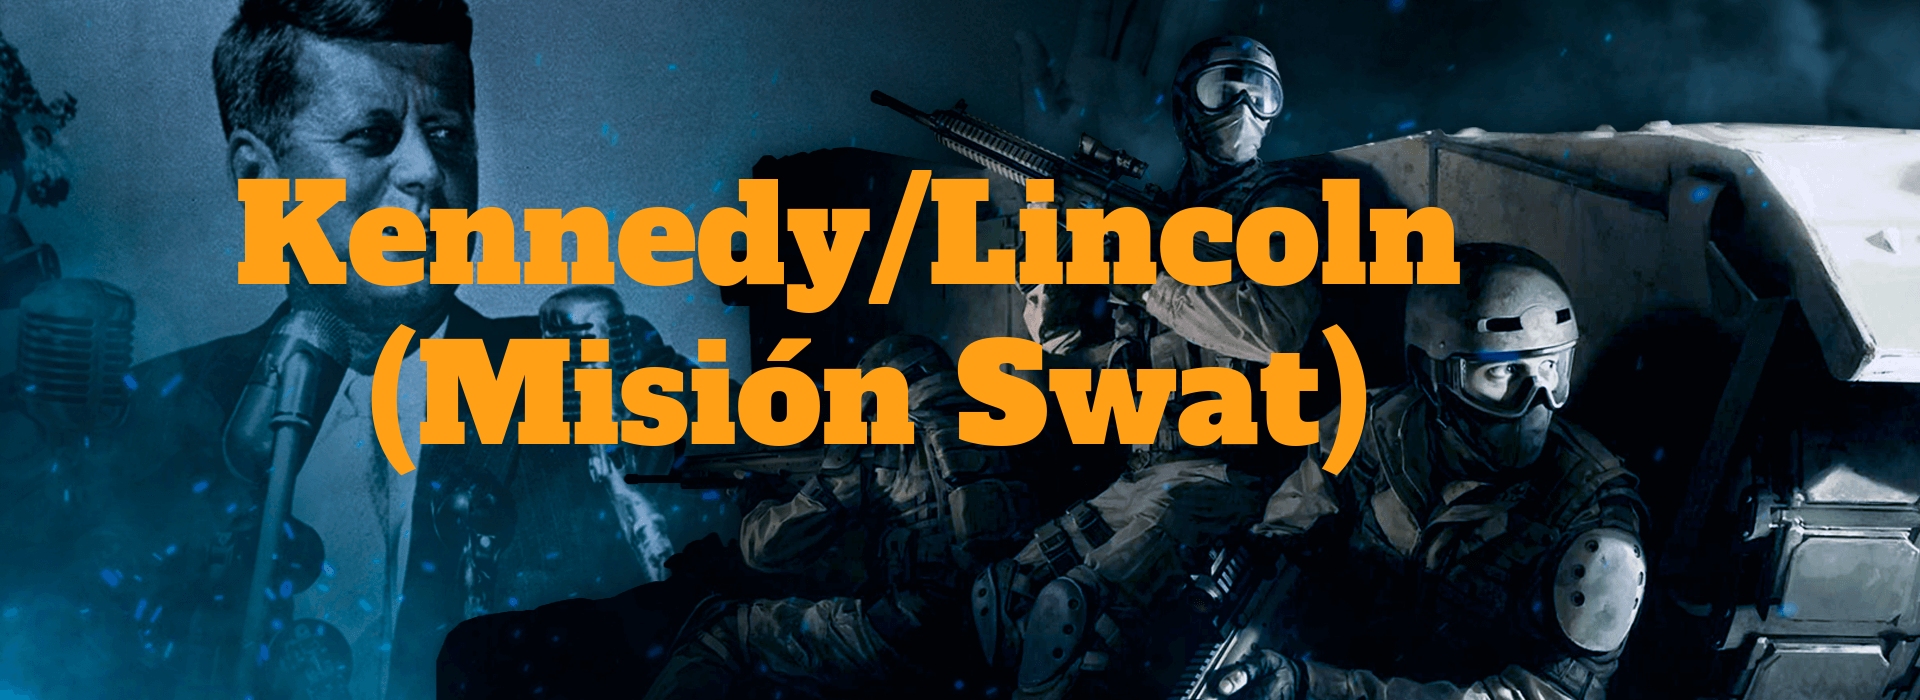 Kennedy/Lincoln (Misión Swat) - La Orden (Madrid) - Review Escape Room